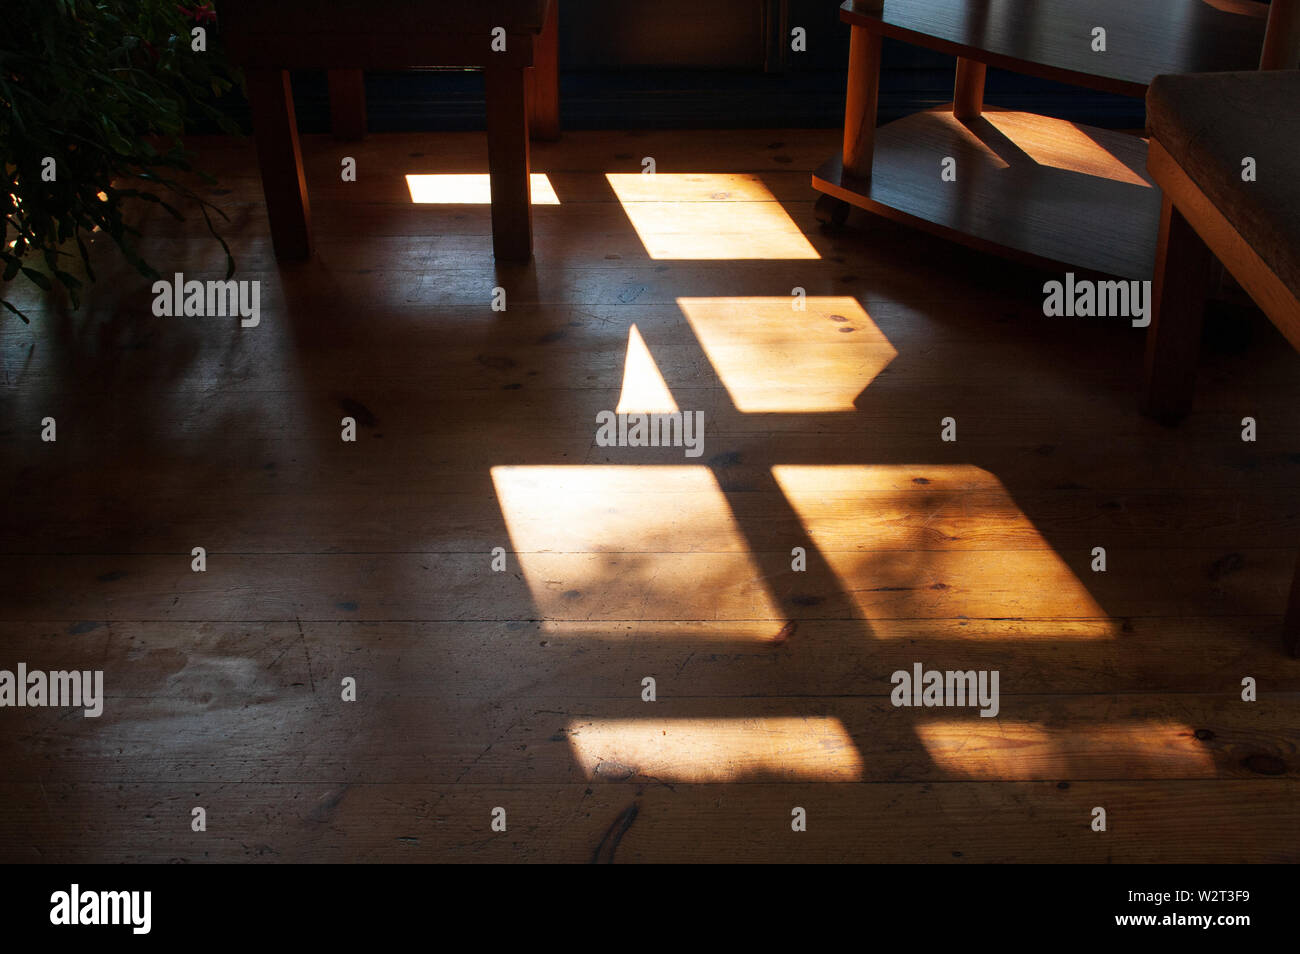 Caliente hermosa luz y sombra de ventana en el piso de madera Foto de stock